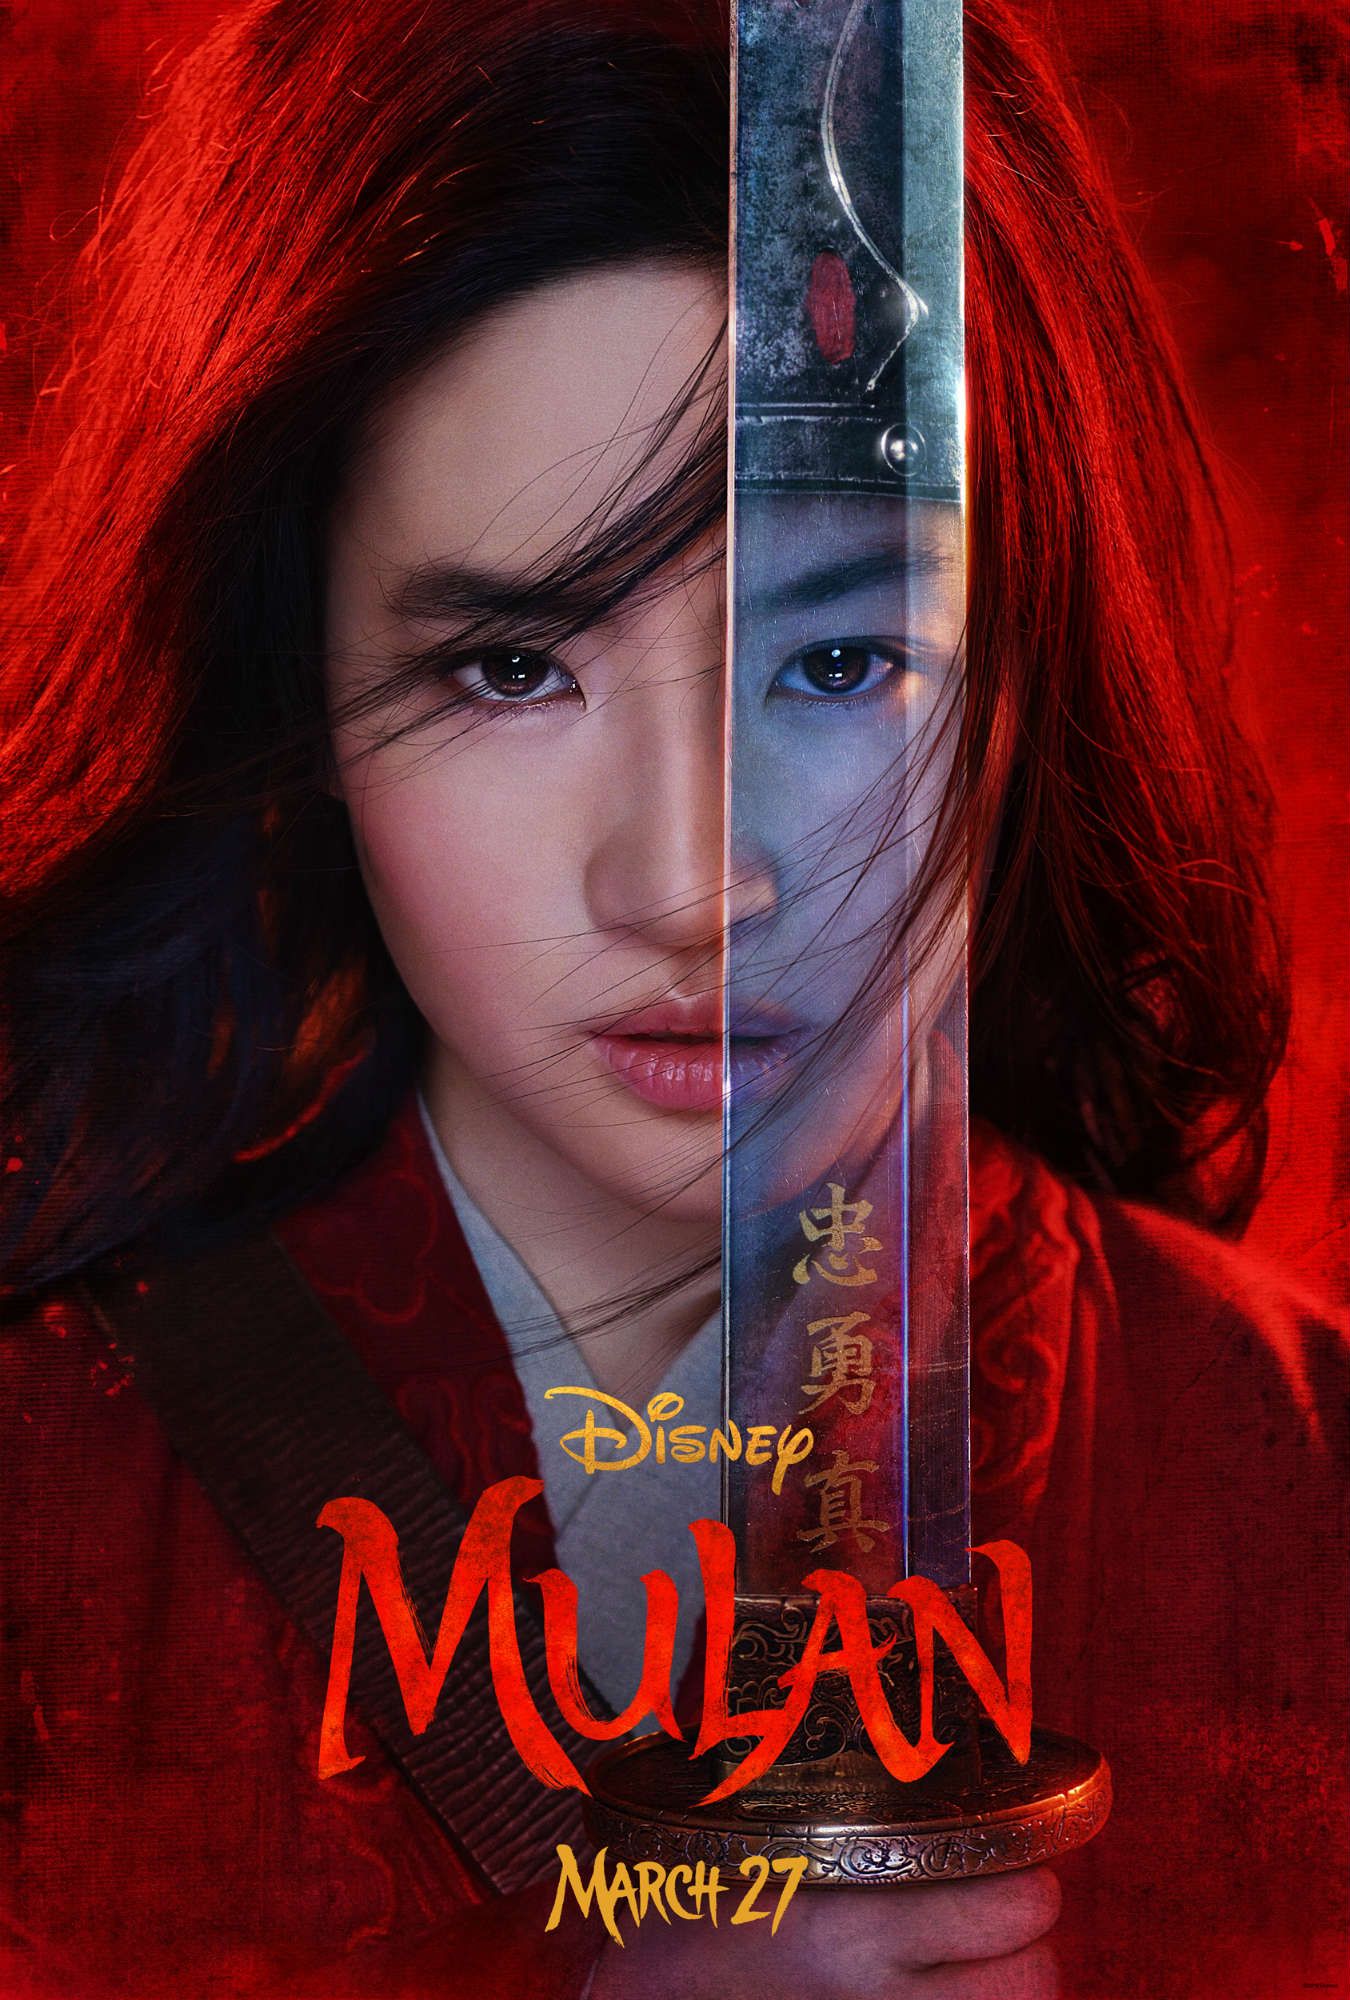 China Accused of Using Twitter Bots To Promote Disney’s Mulan After Hong Kong Backlash